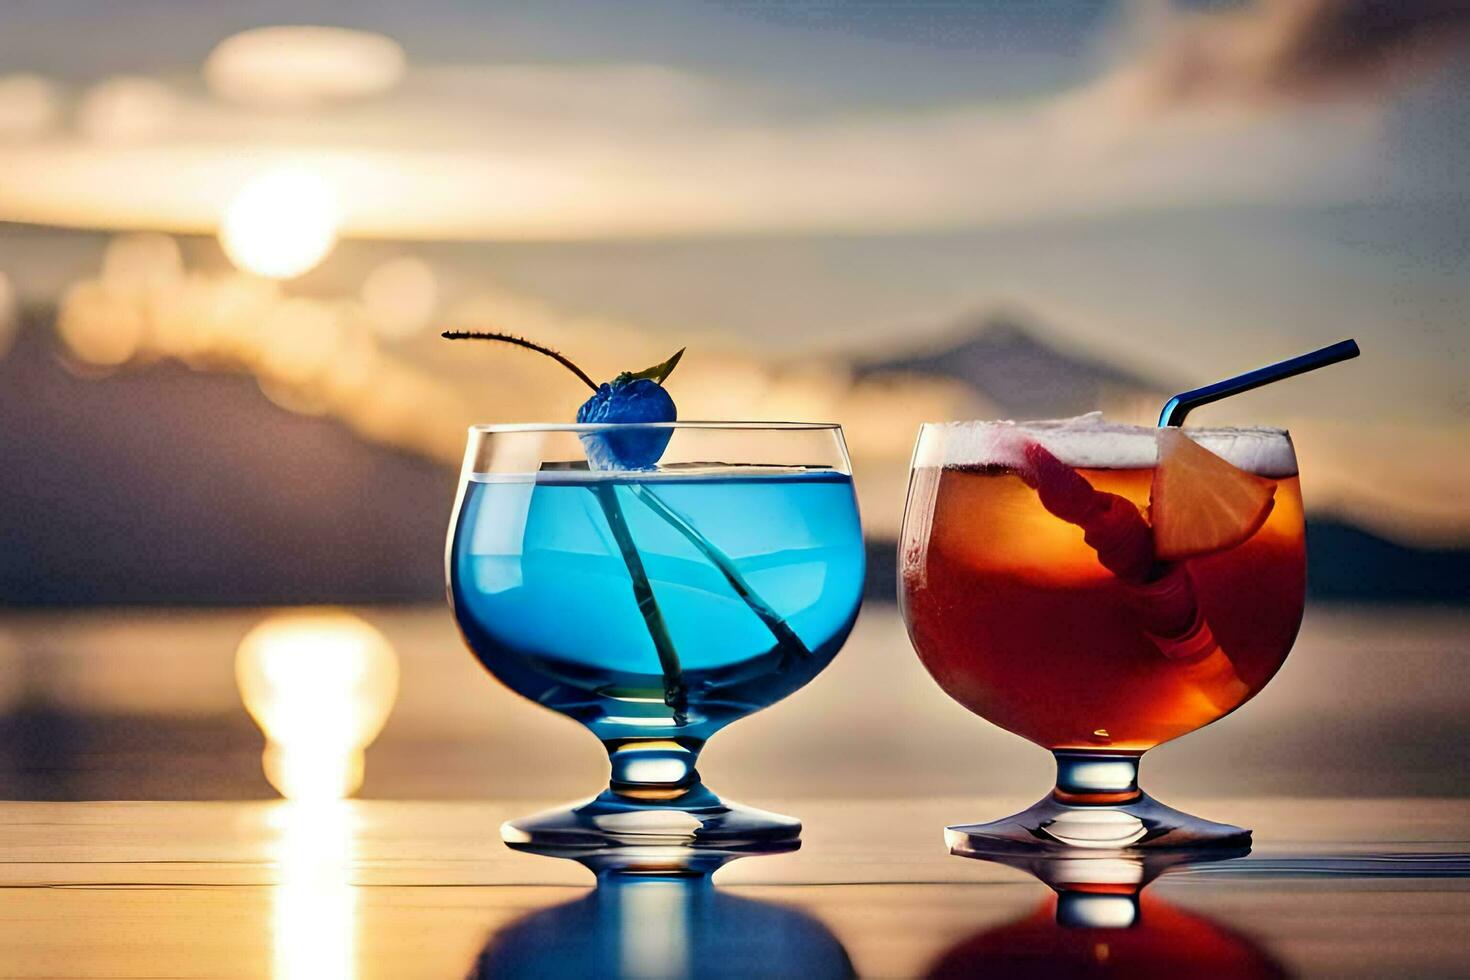 twee bril van drankjes met een zonsondergang in de achtergrond. ai-gegenereerd foto